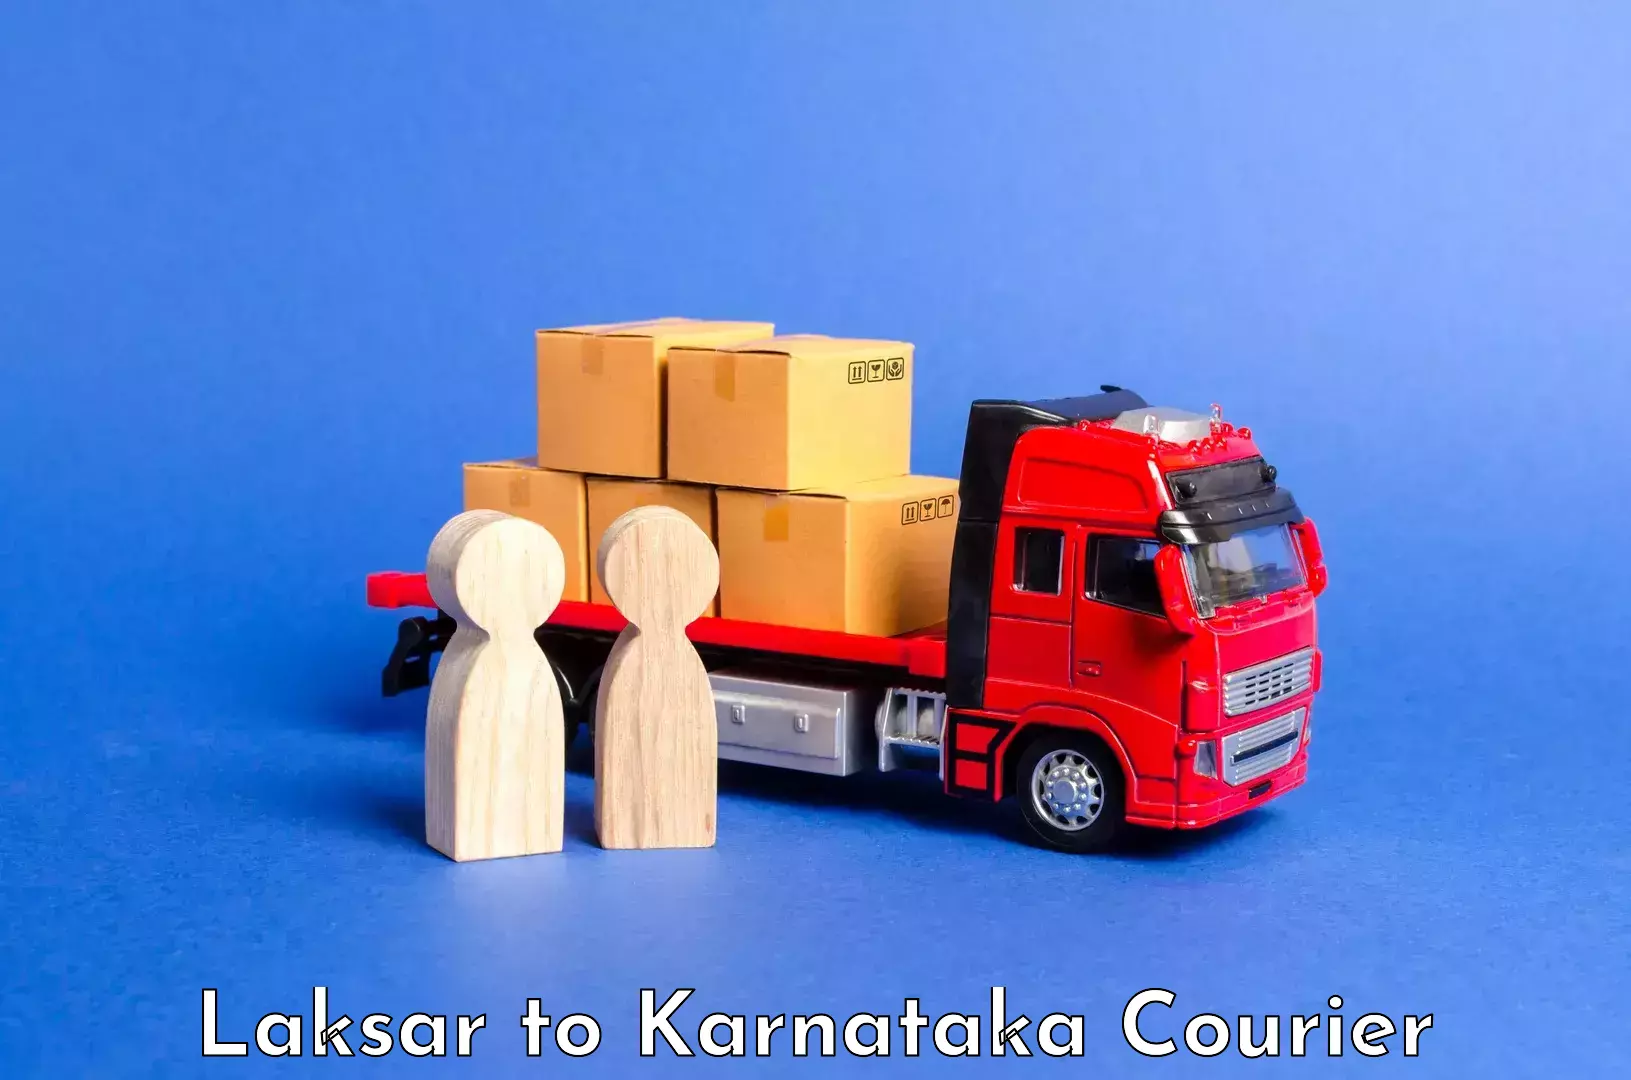 Luggage transport consulting Laksar to Karnataka